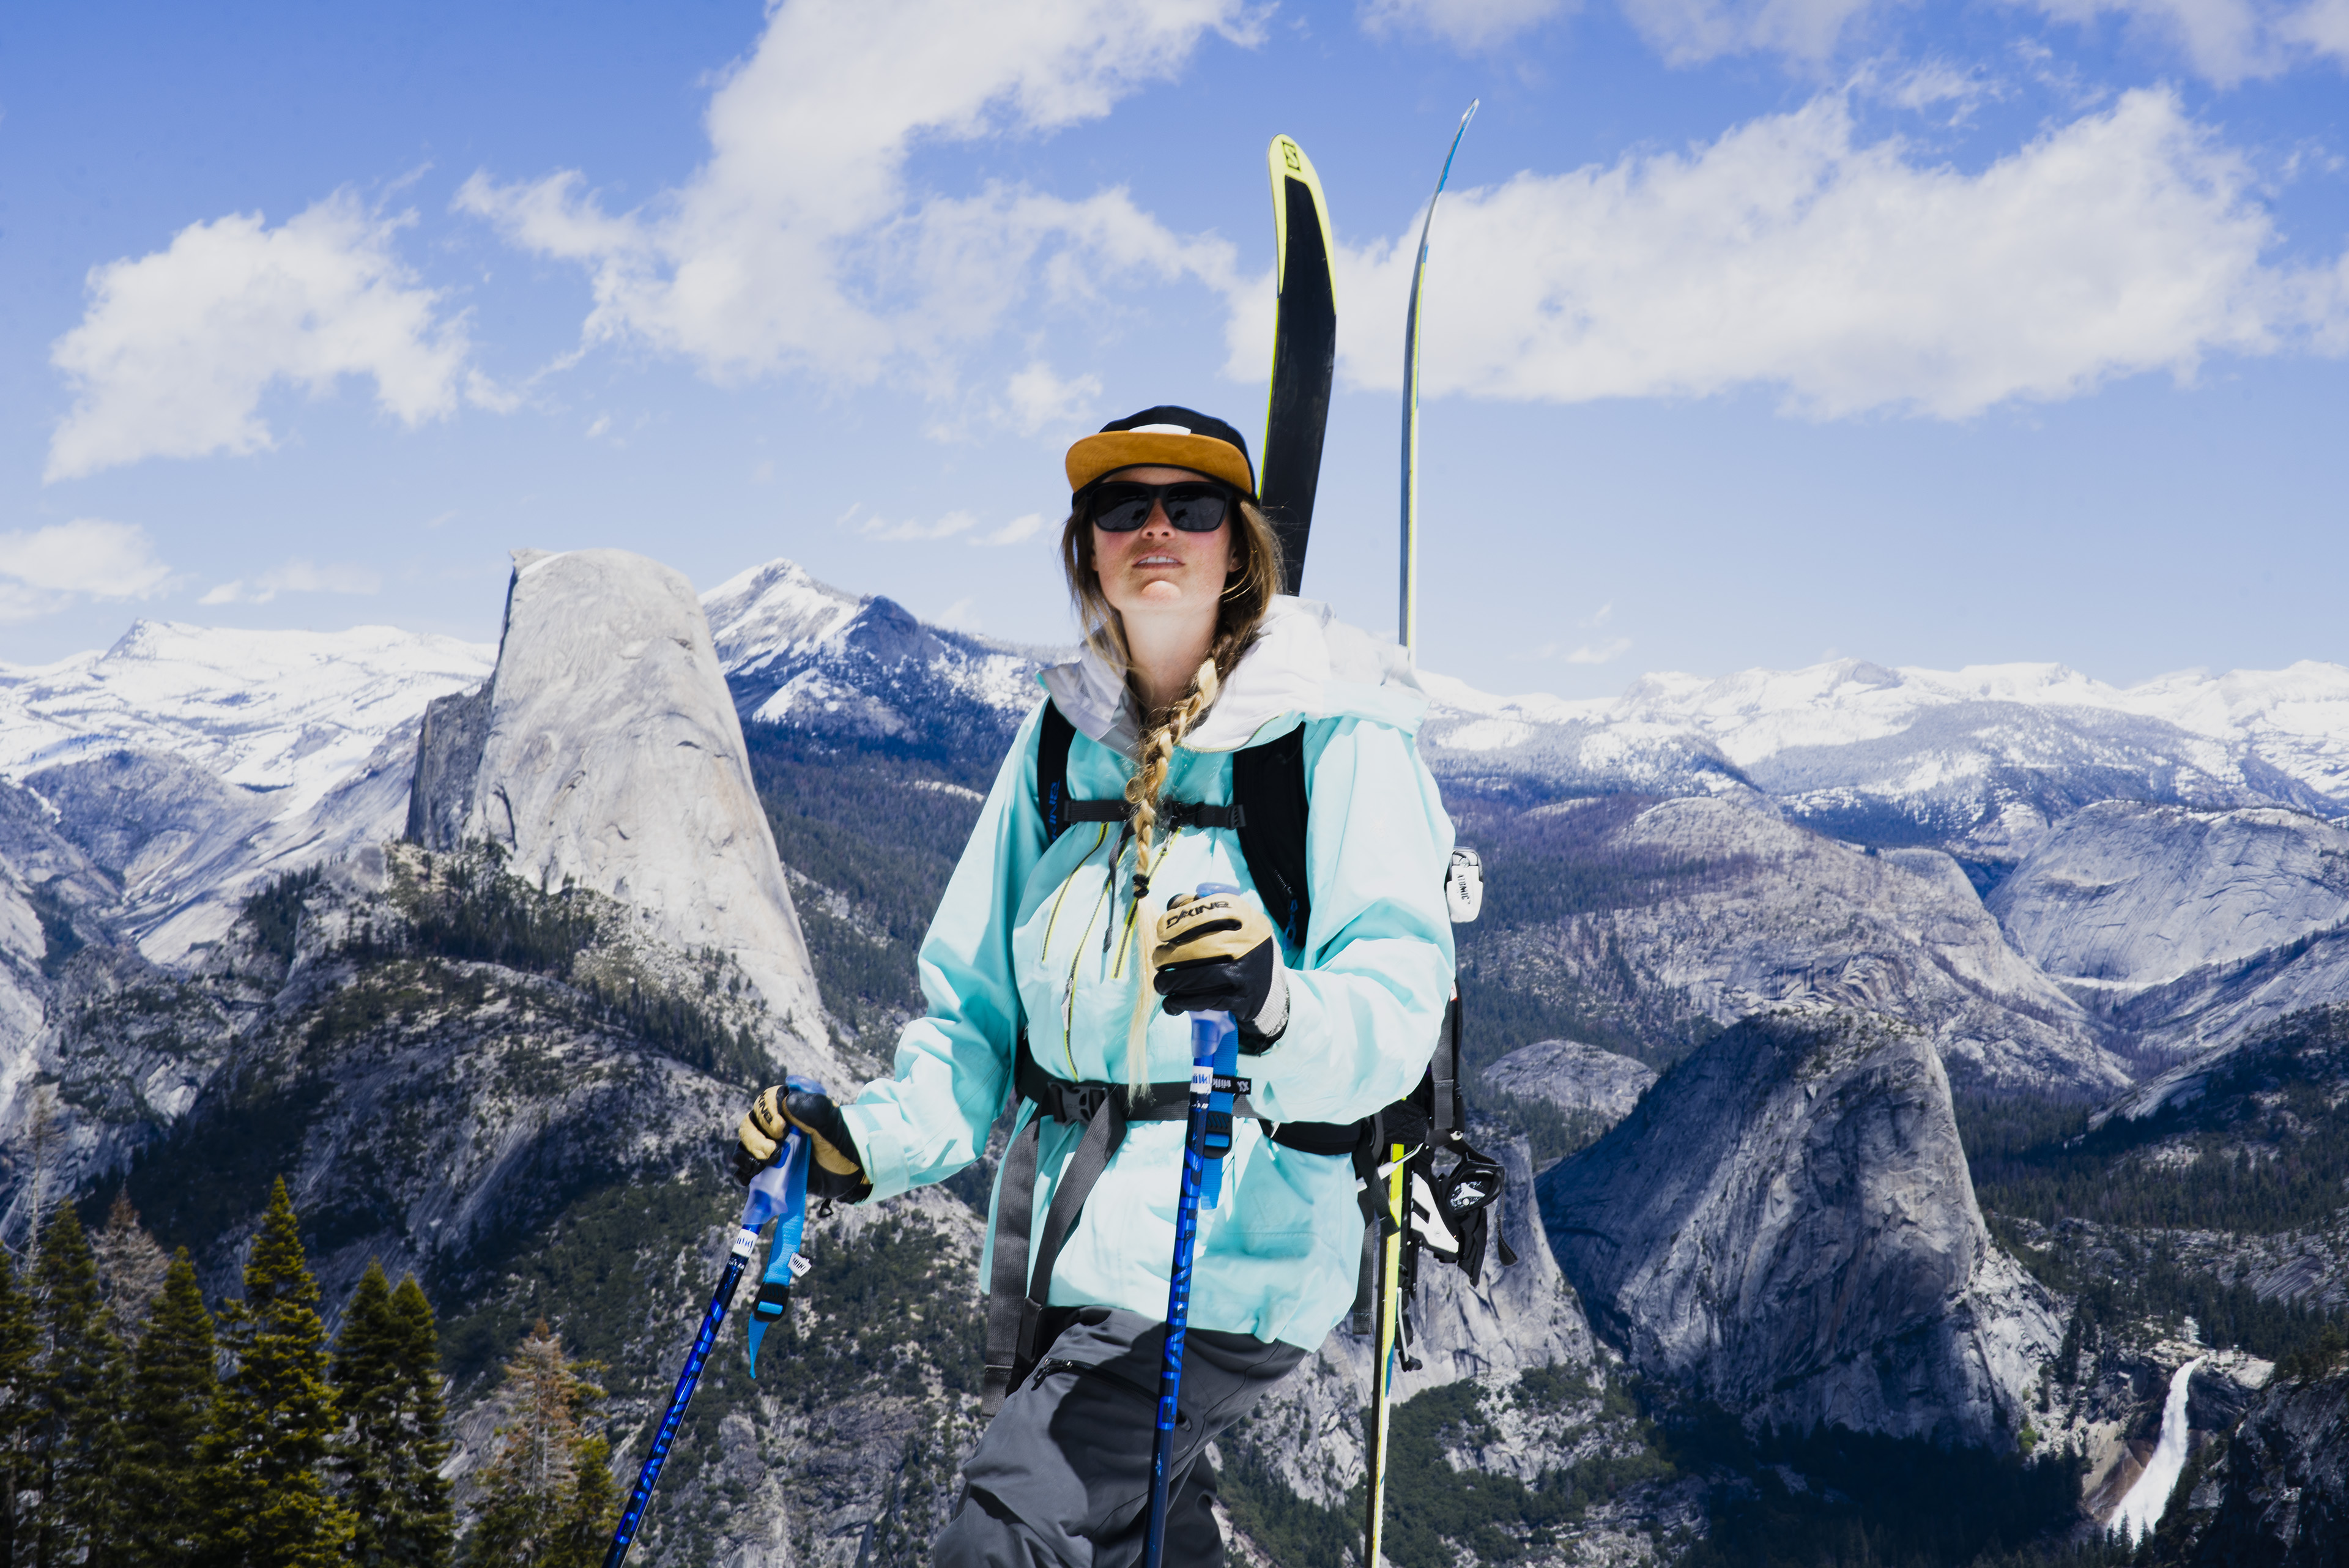 Kenzie Morris skier profile